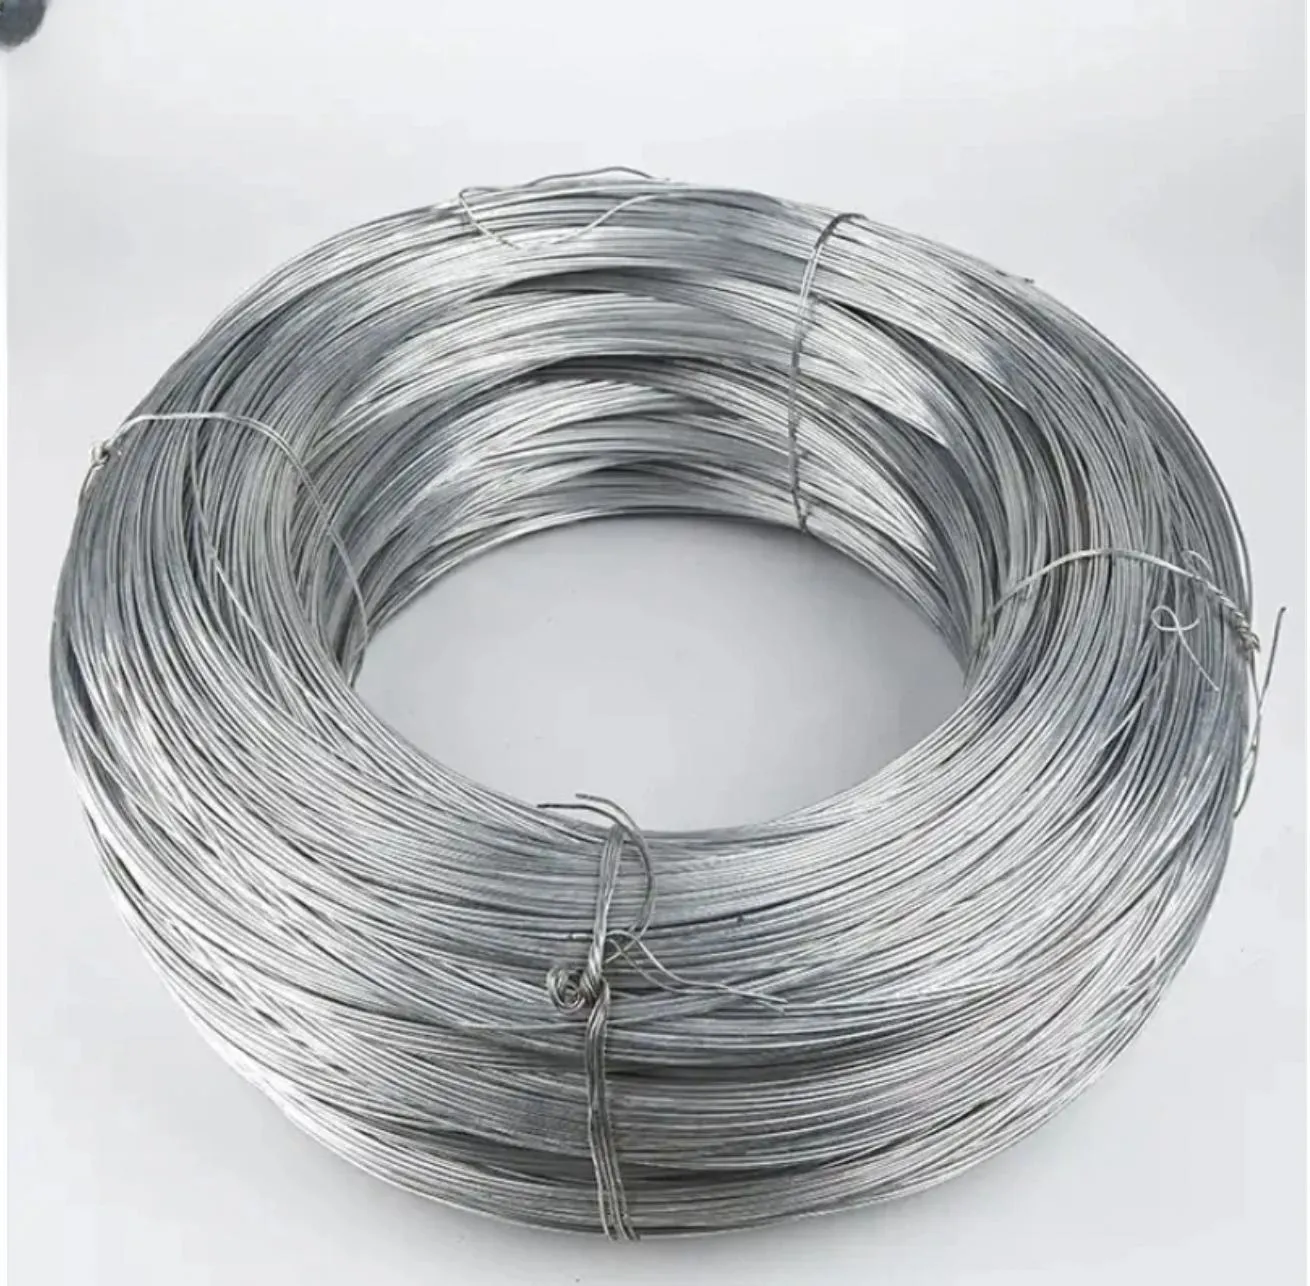 亜鉛メッキスプールワイヤー電気バインディング & パンチングサービス亜鉛メッキ鉄線